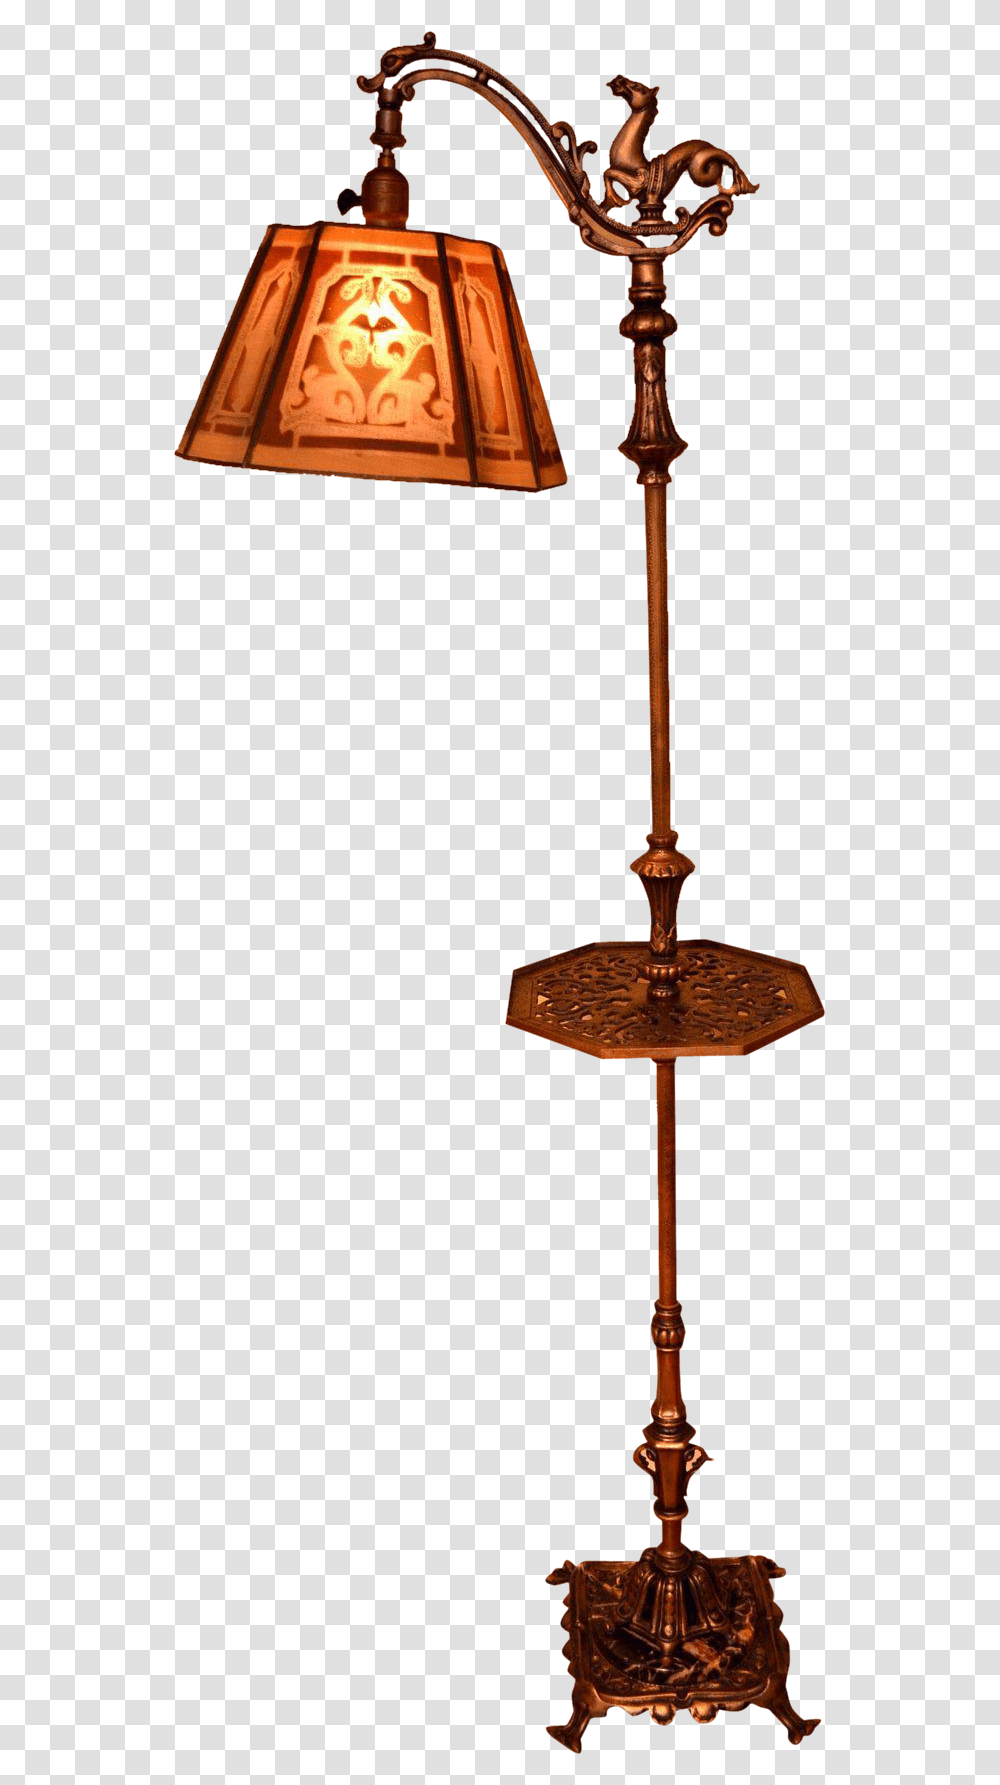 Lamp, Lampshade, Cross, Lamp Post Transparent Png